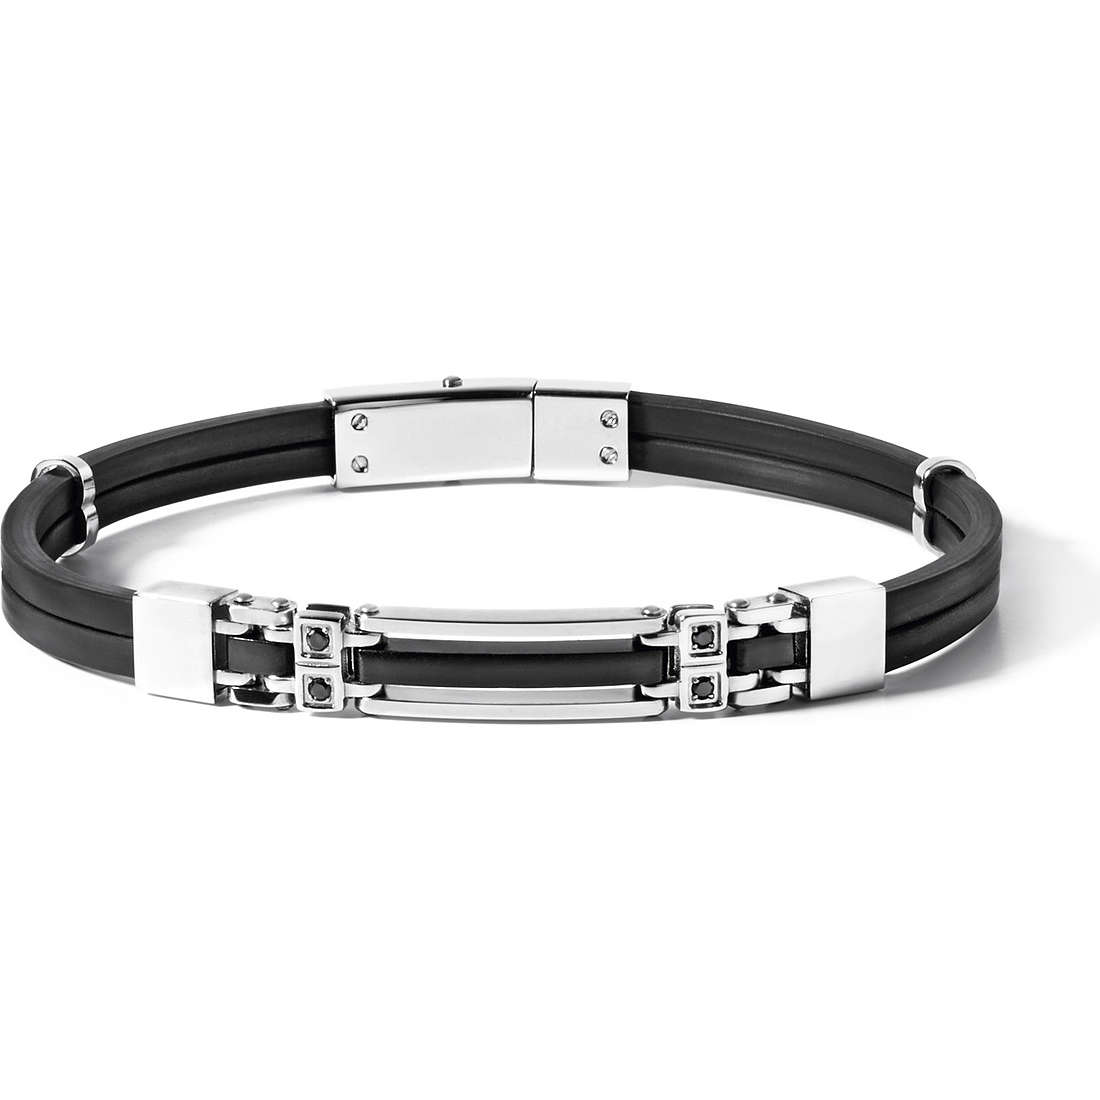 UBR 490 Steel Jewelry Men’s Bracelet